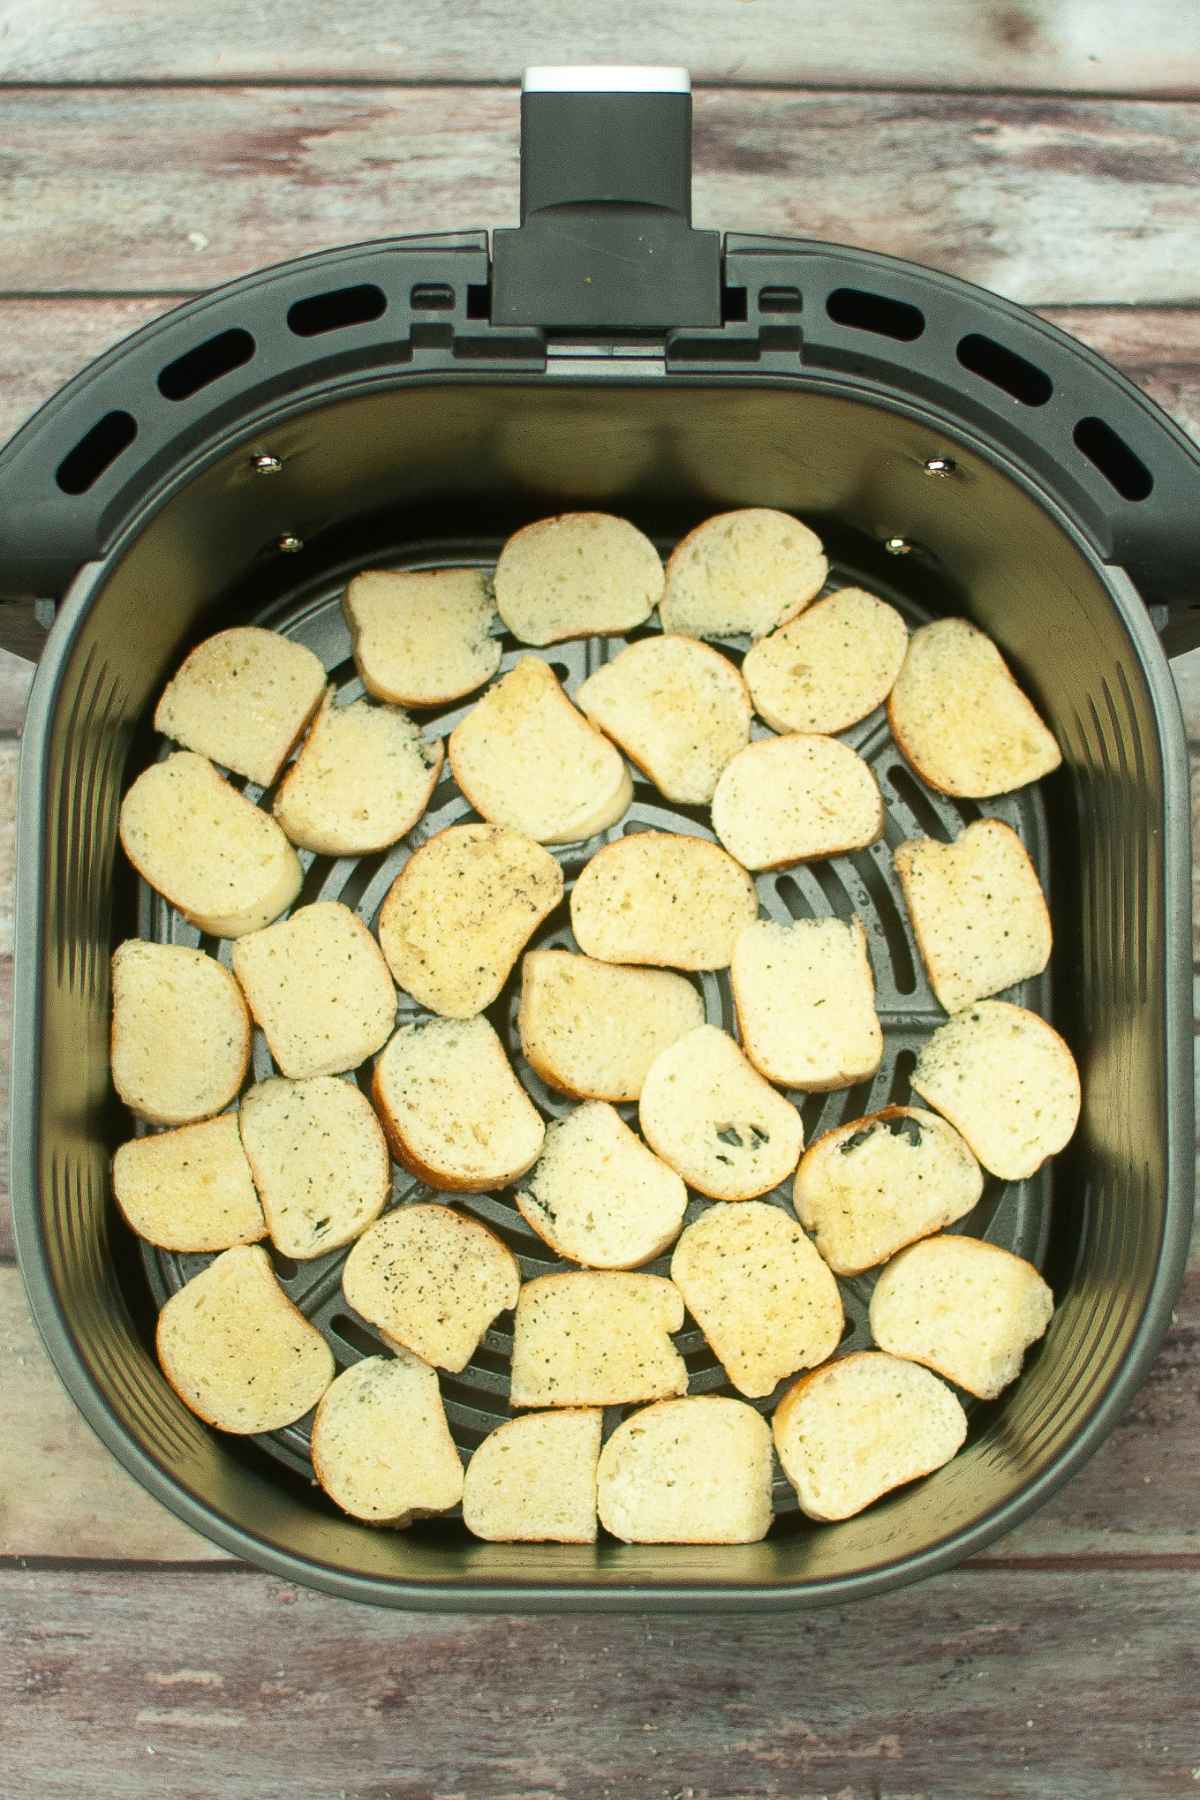 Sliced bagel pieces in air fryer basket before cooking.